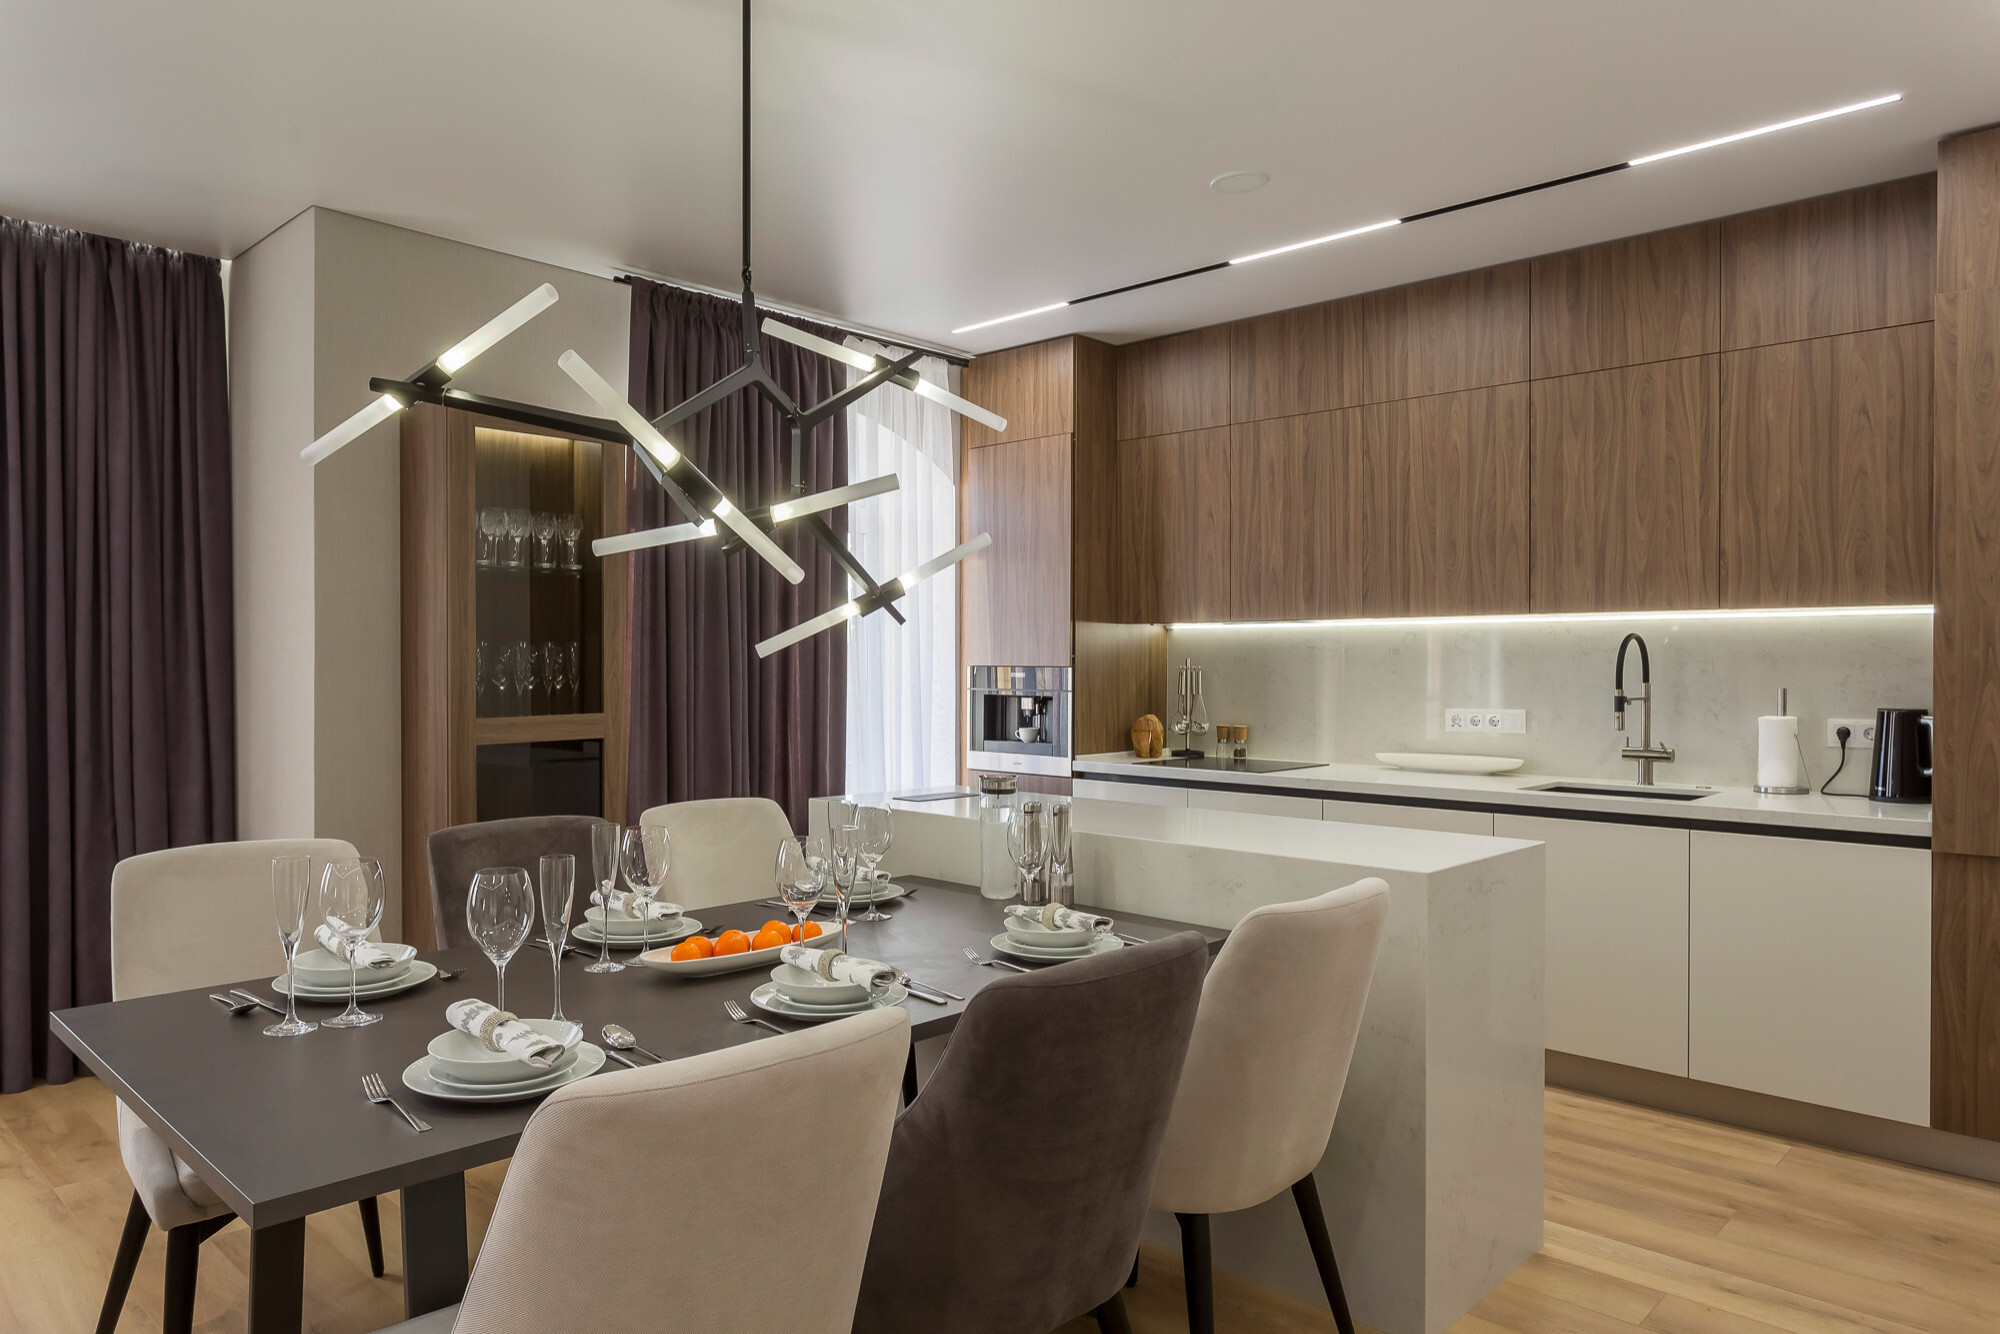 Интерьер кухни с рейками с подсветкой, светильниками над столом и подсветкой светодиодной